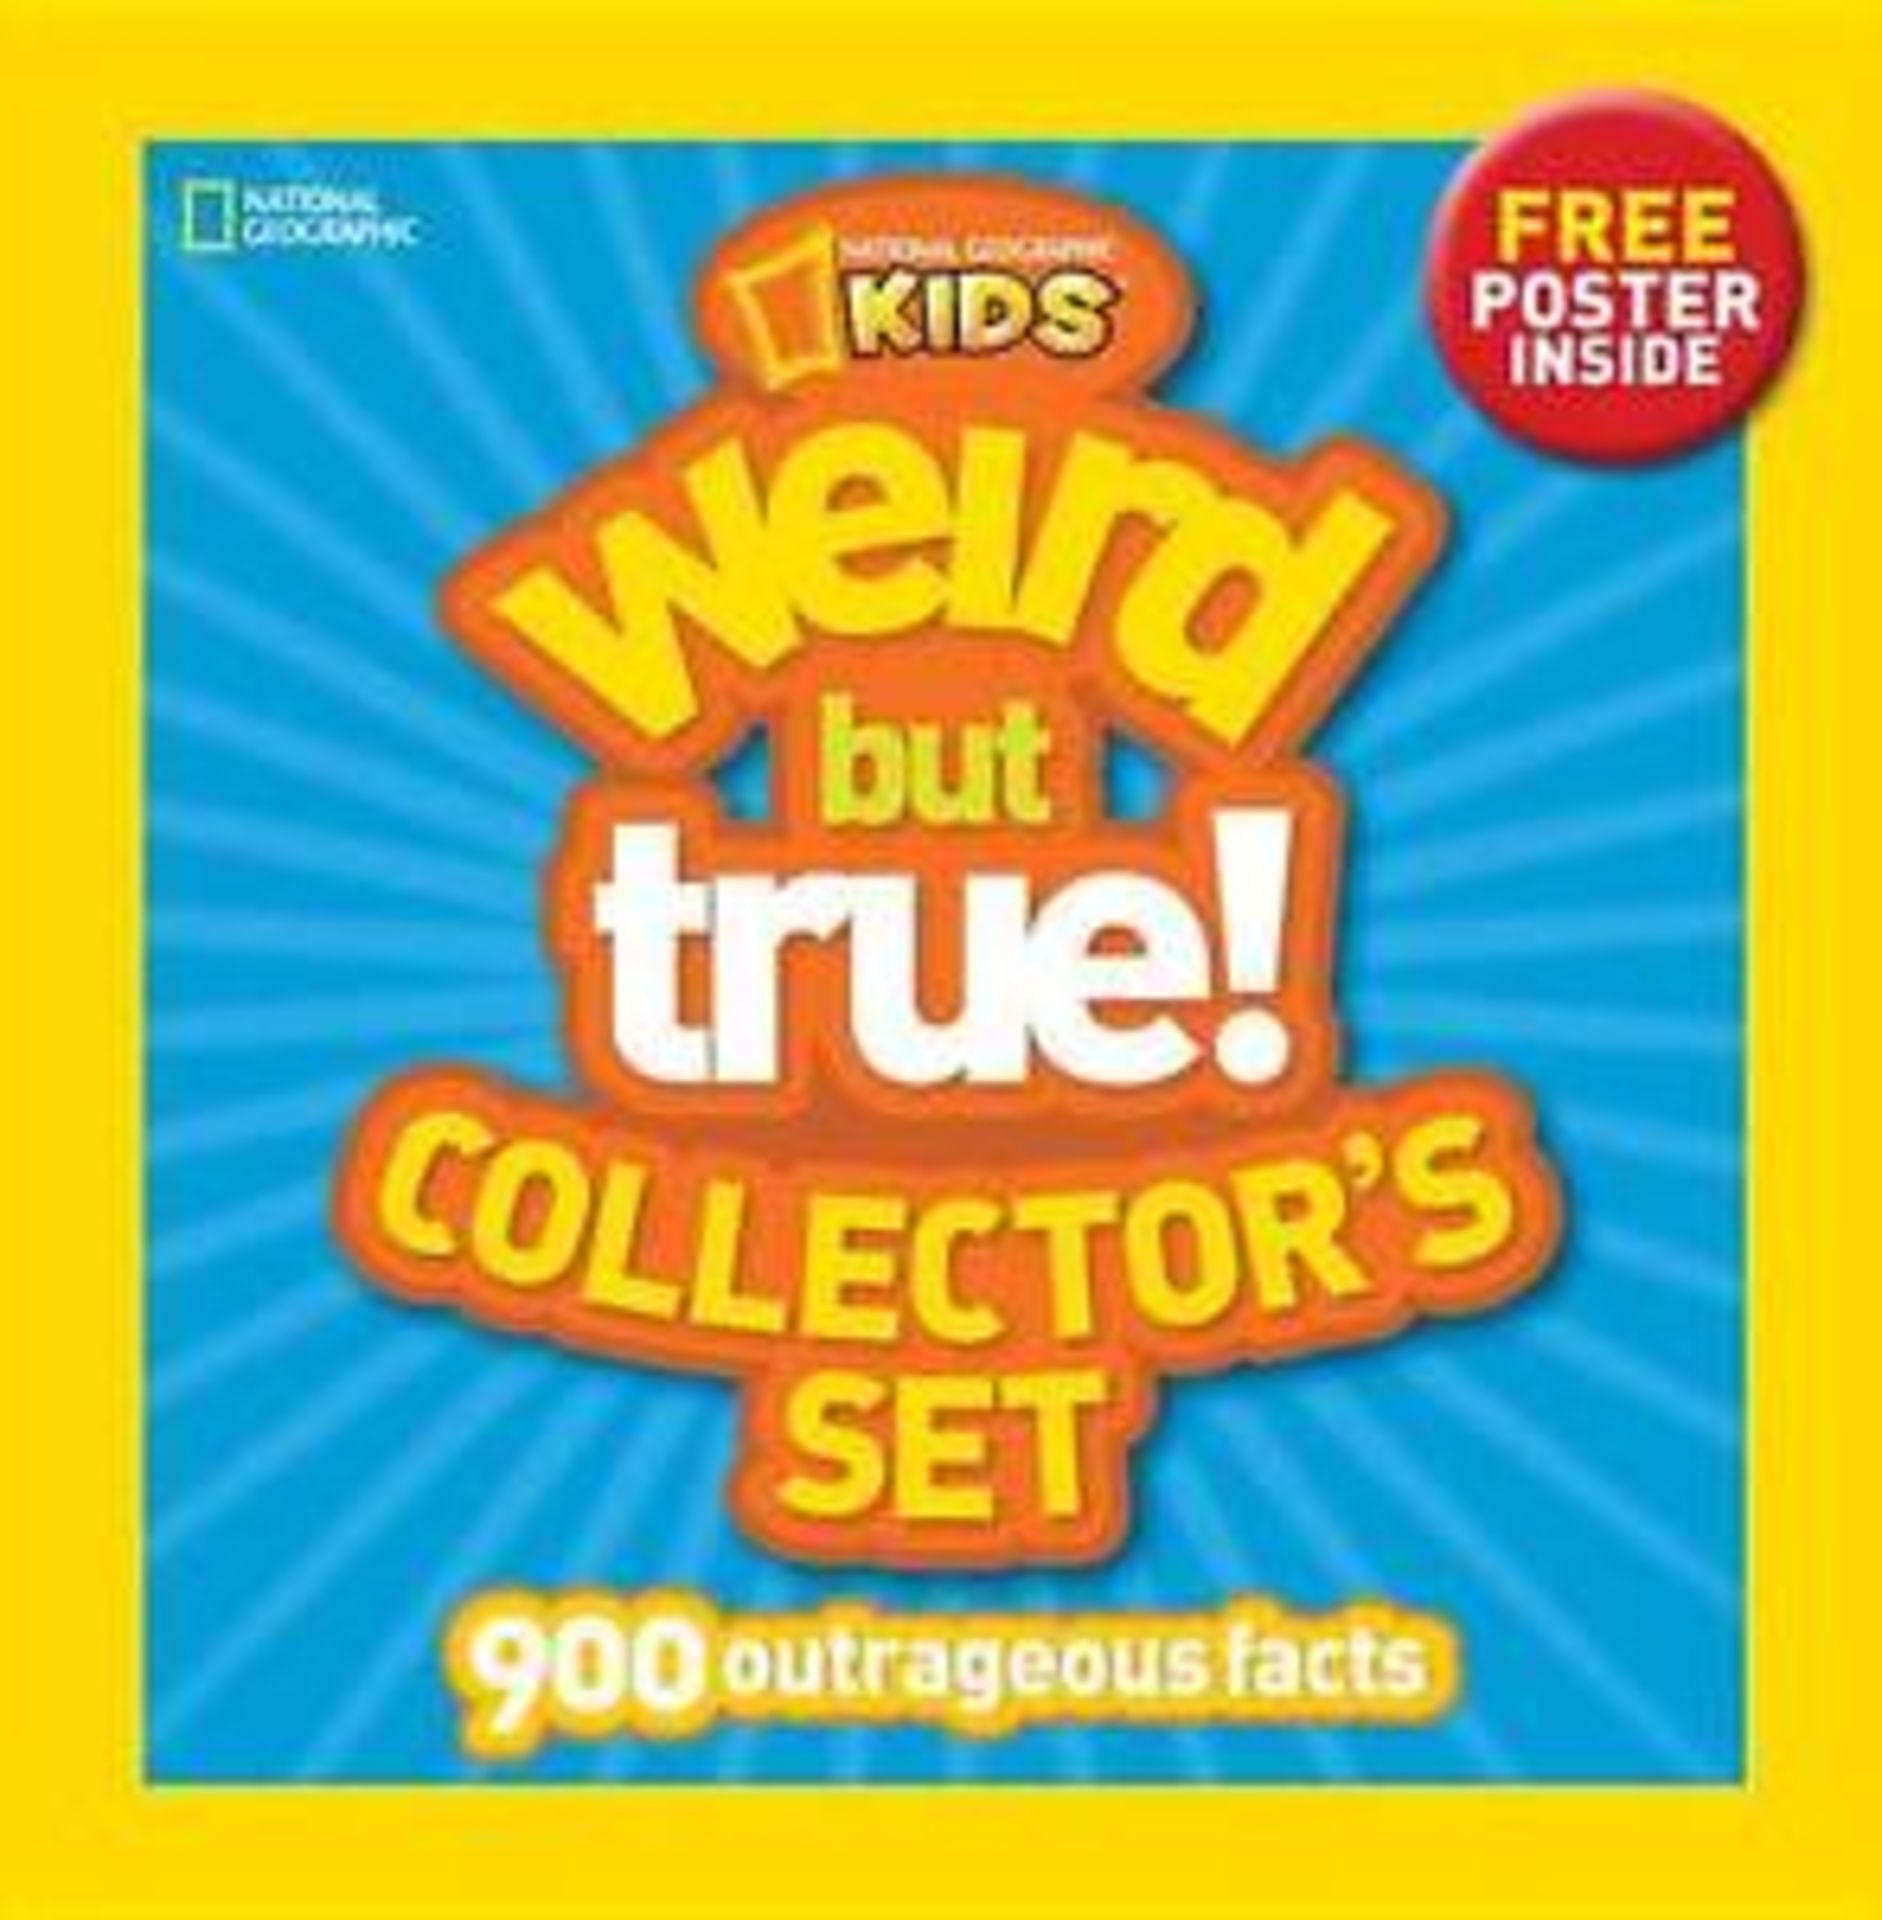 Weird But True! Collector's Set: 900 Outrageous Facts, BNIB. (New) [Ref: